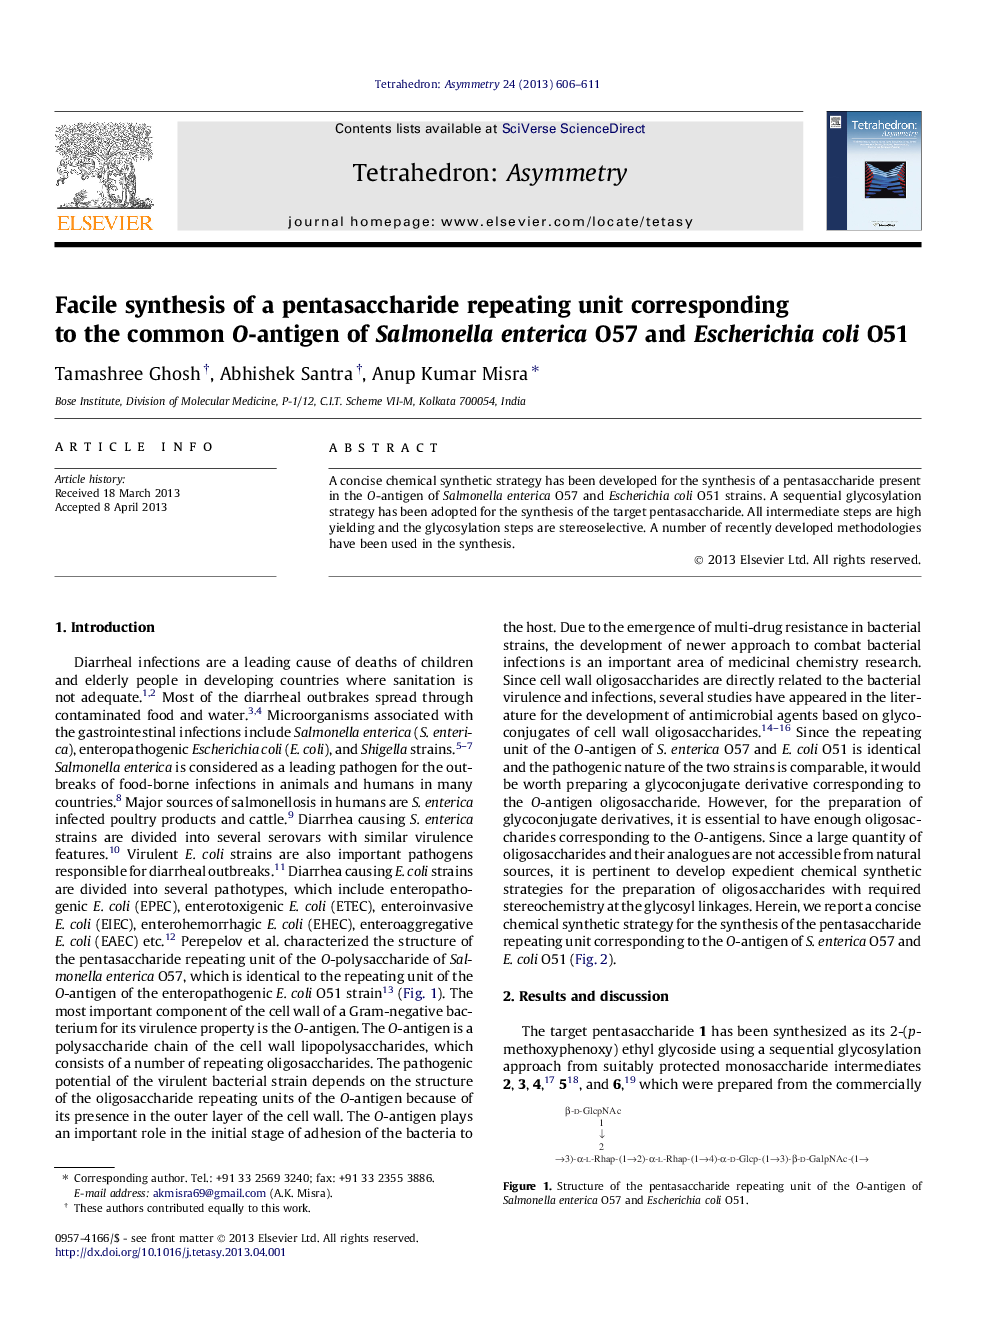 Facile synthesis of a pentasaccharide repeating unit corresponding to the common O-antigen of Salmonella enterica O57 and Escherichia coli O51